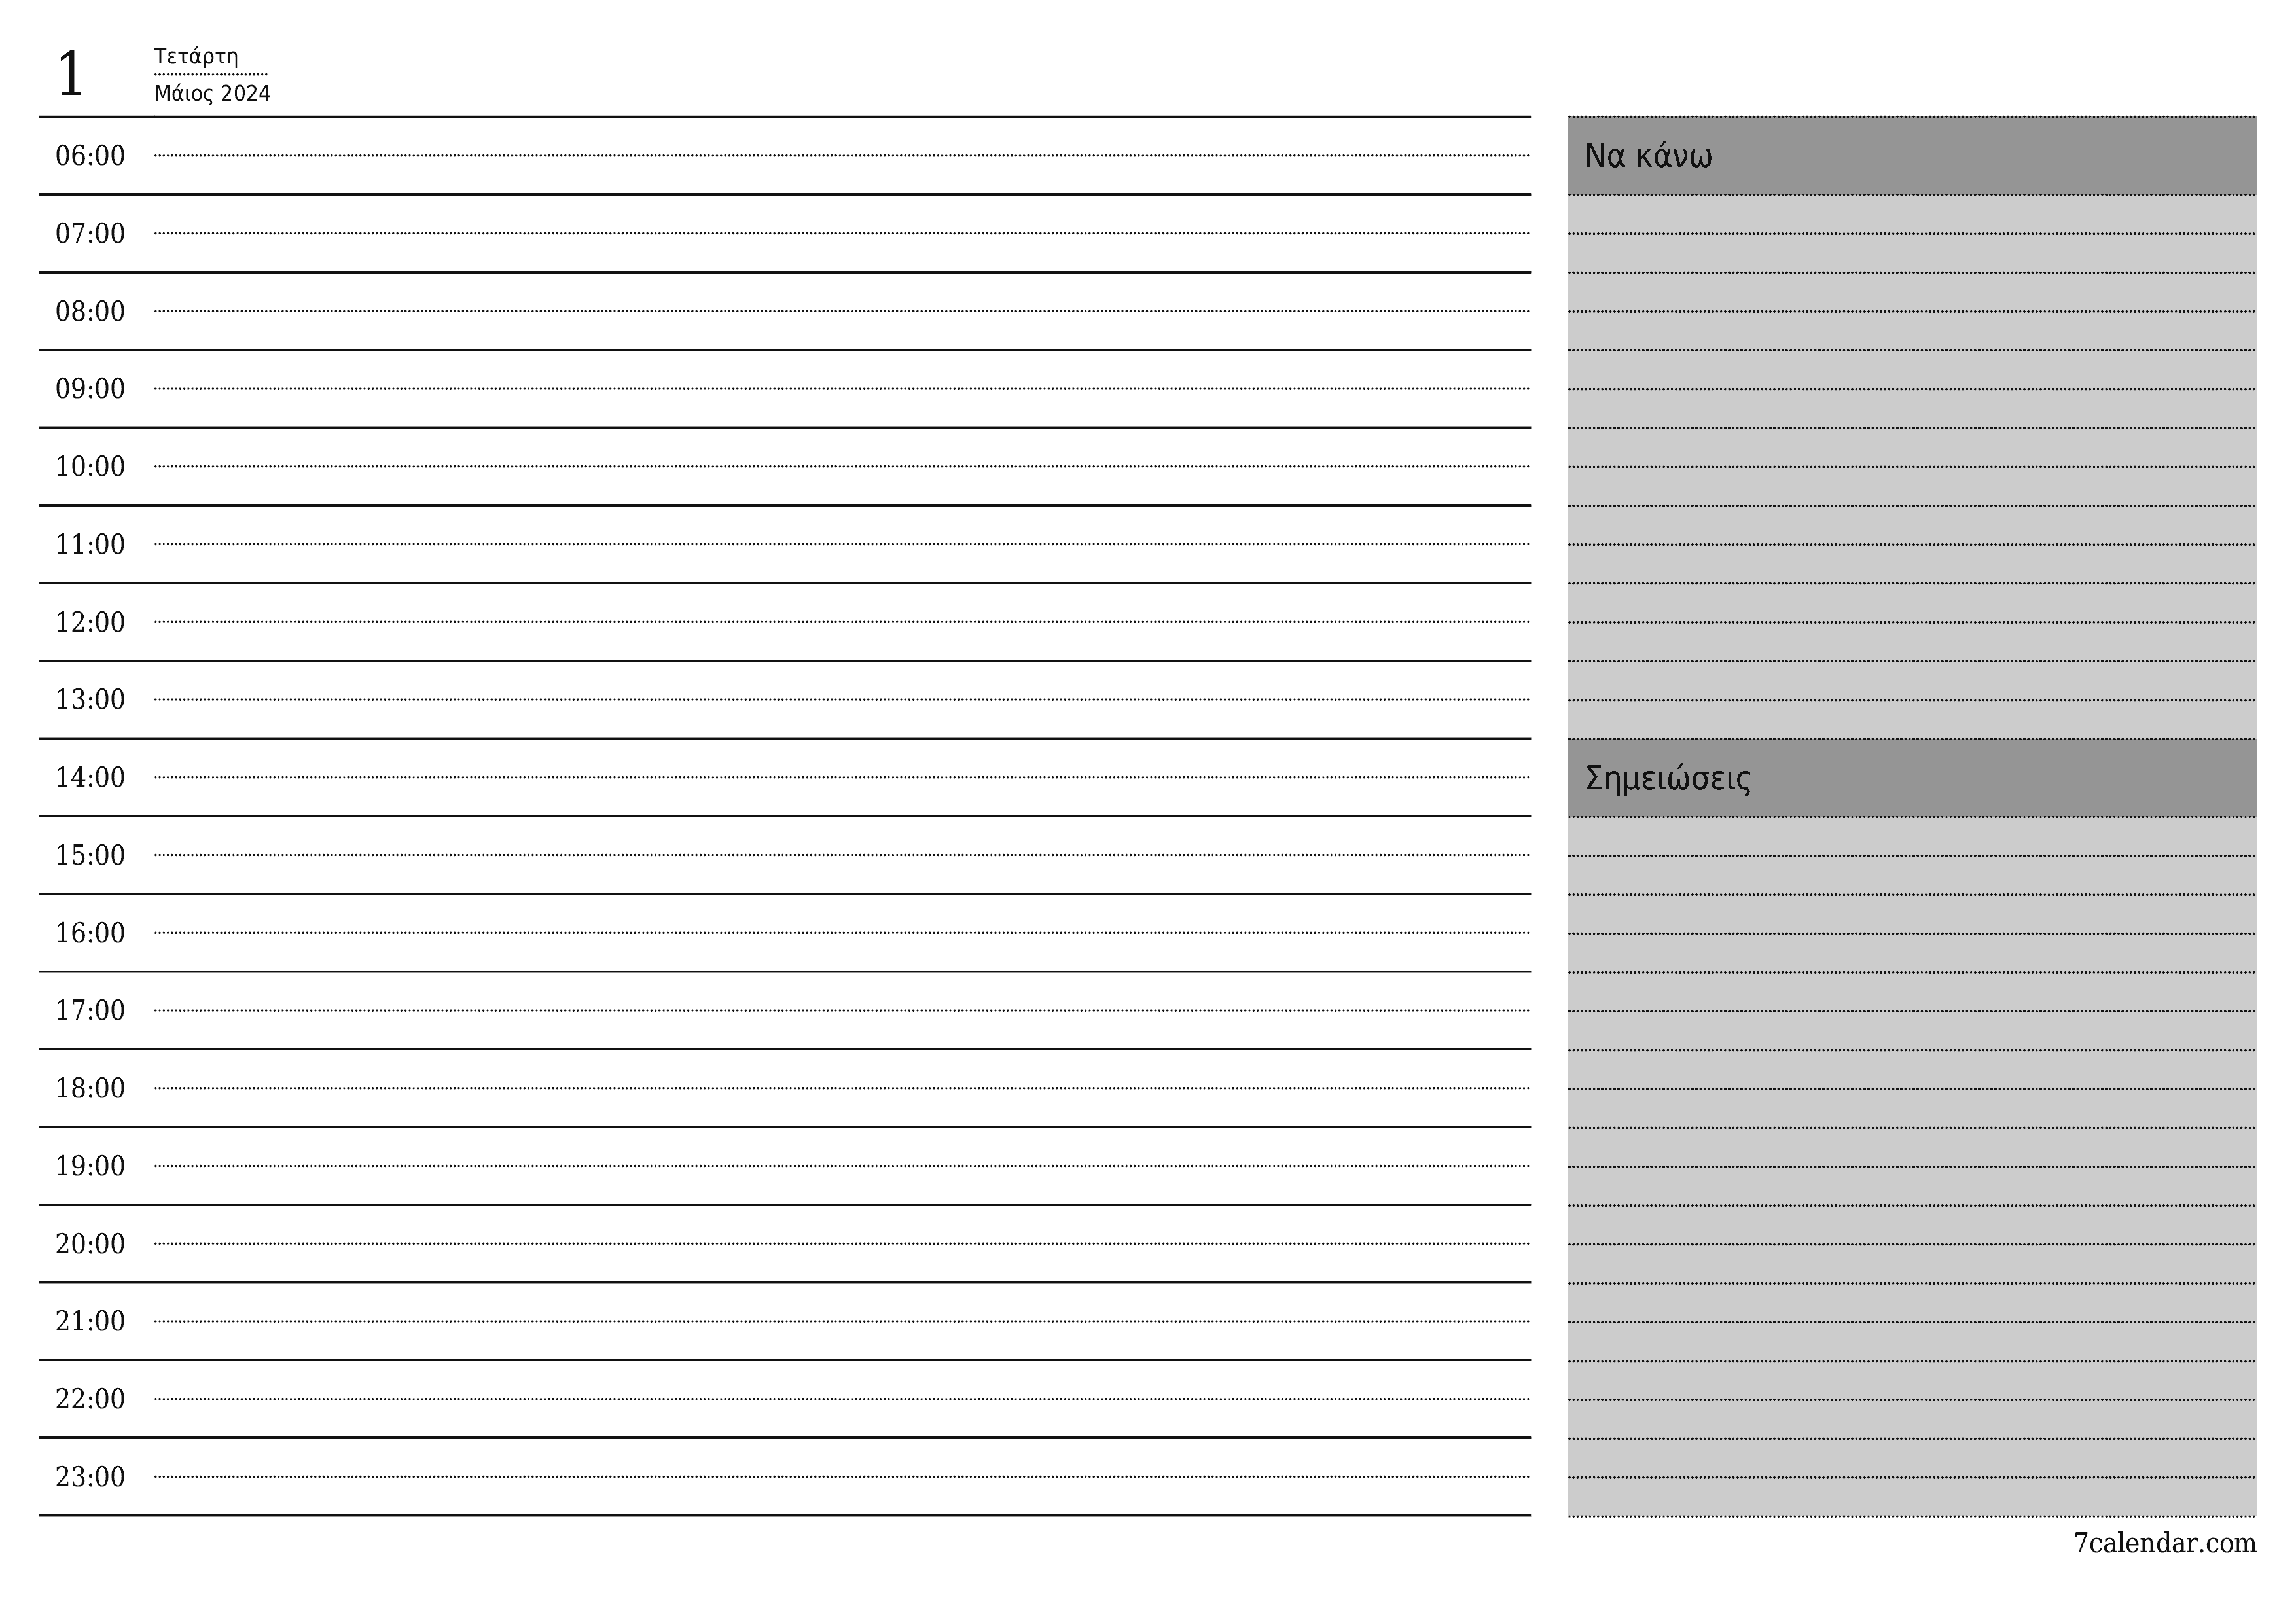 Κενό καθημερινό σχεδιασμό για την ημέρα Μάιος 2024 με σημειώσεις, αποθήκευση και εκτύπωση σε PDF PNG Greek